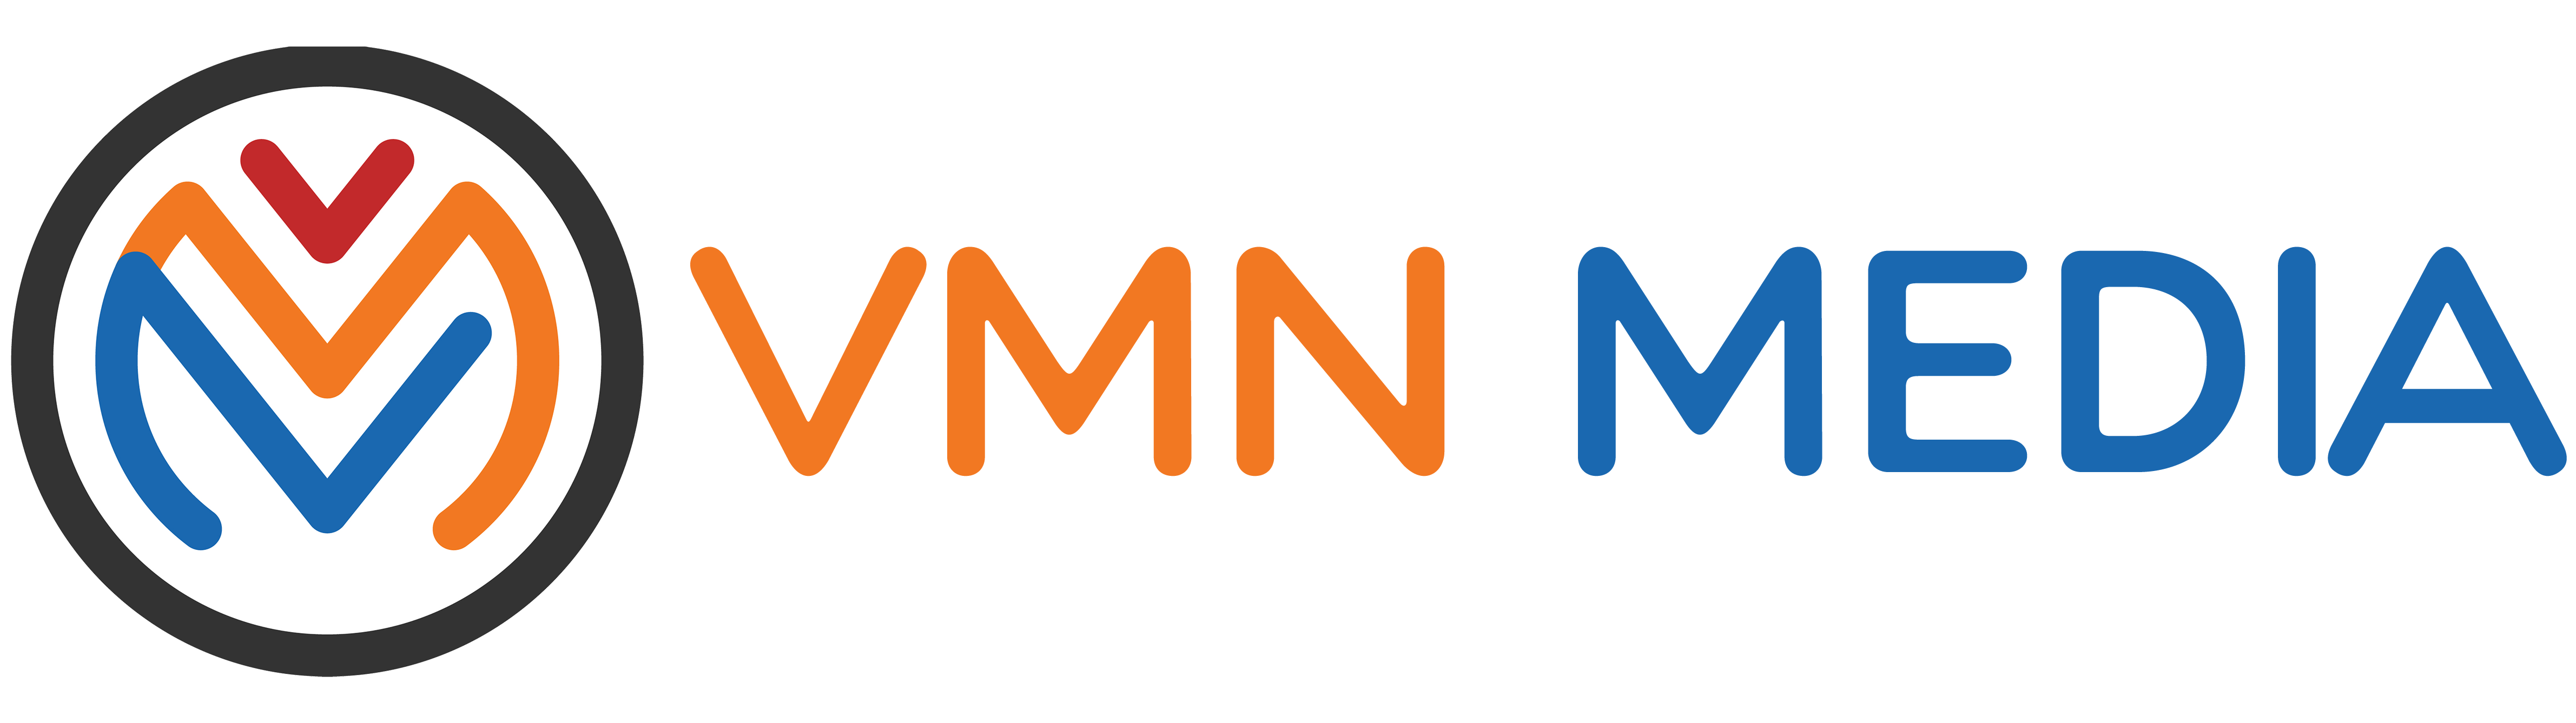 VMN Media